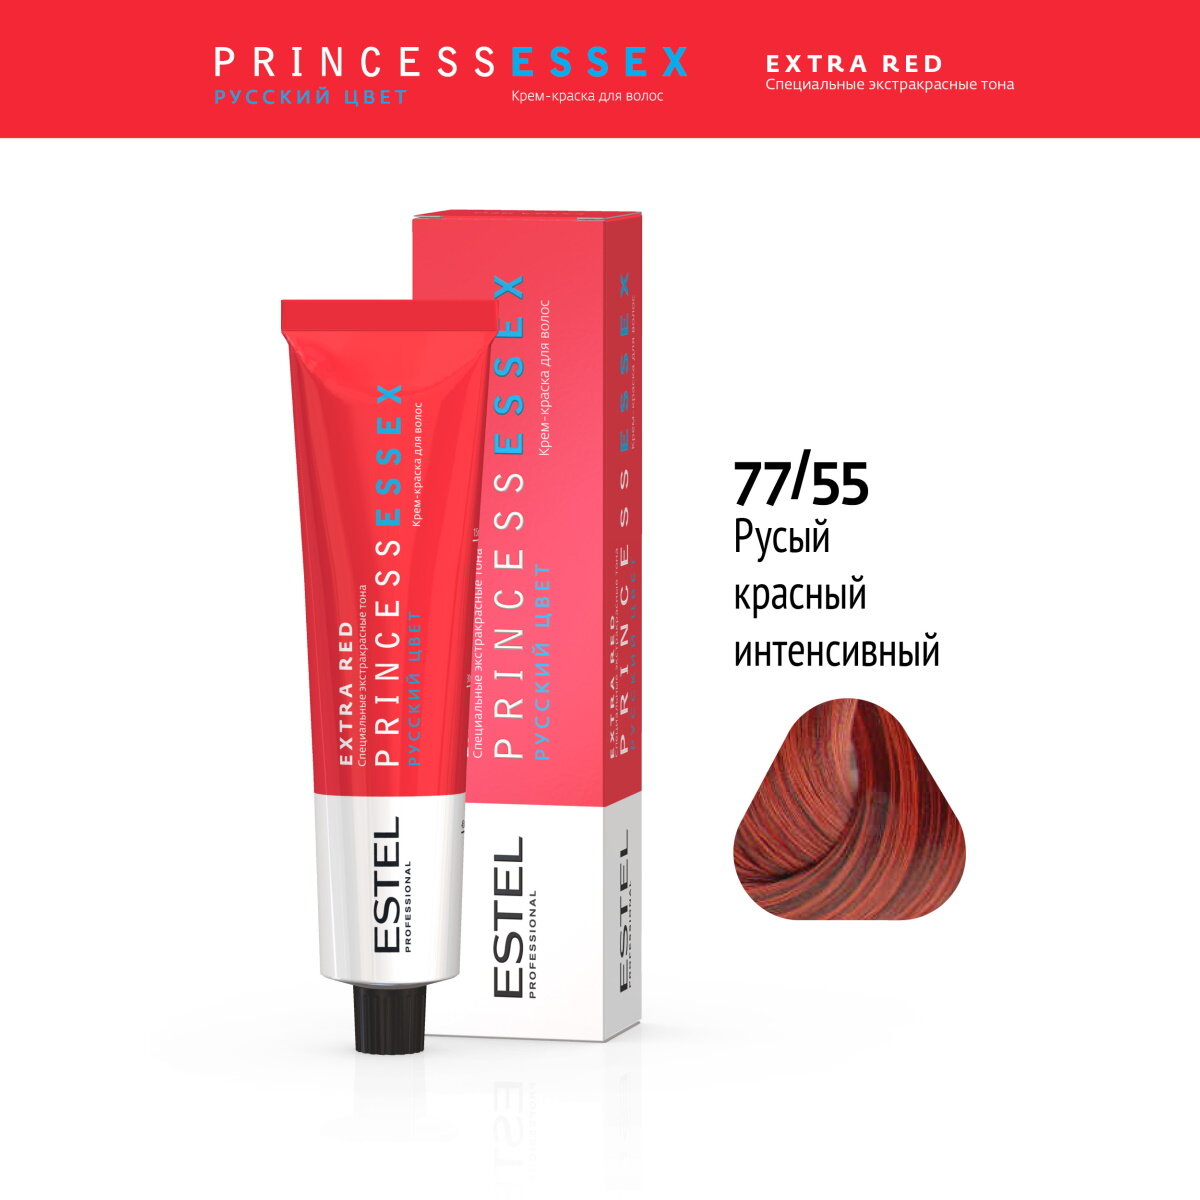 Крем-краска PRINCESS ESSEX EXTRA RED для окрашивания волос ESTEL PROFESSIONAL 77/55 страстная кармен 60 мл